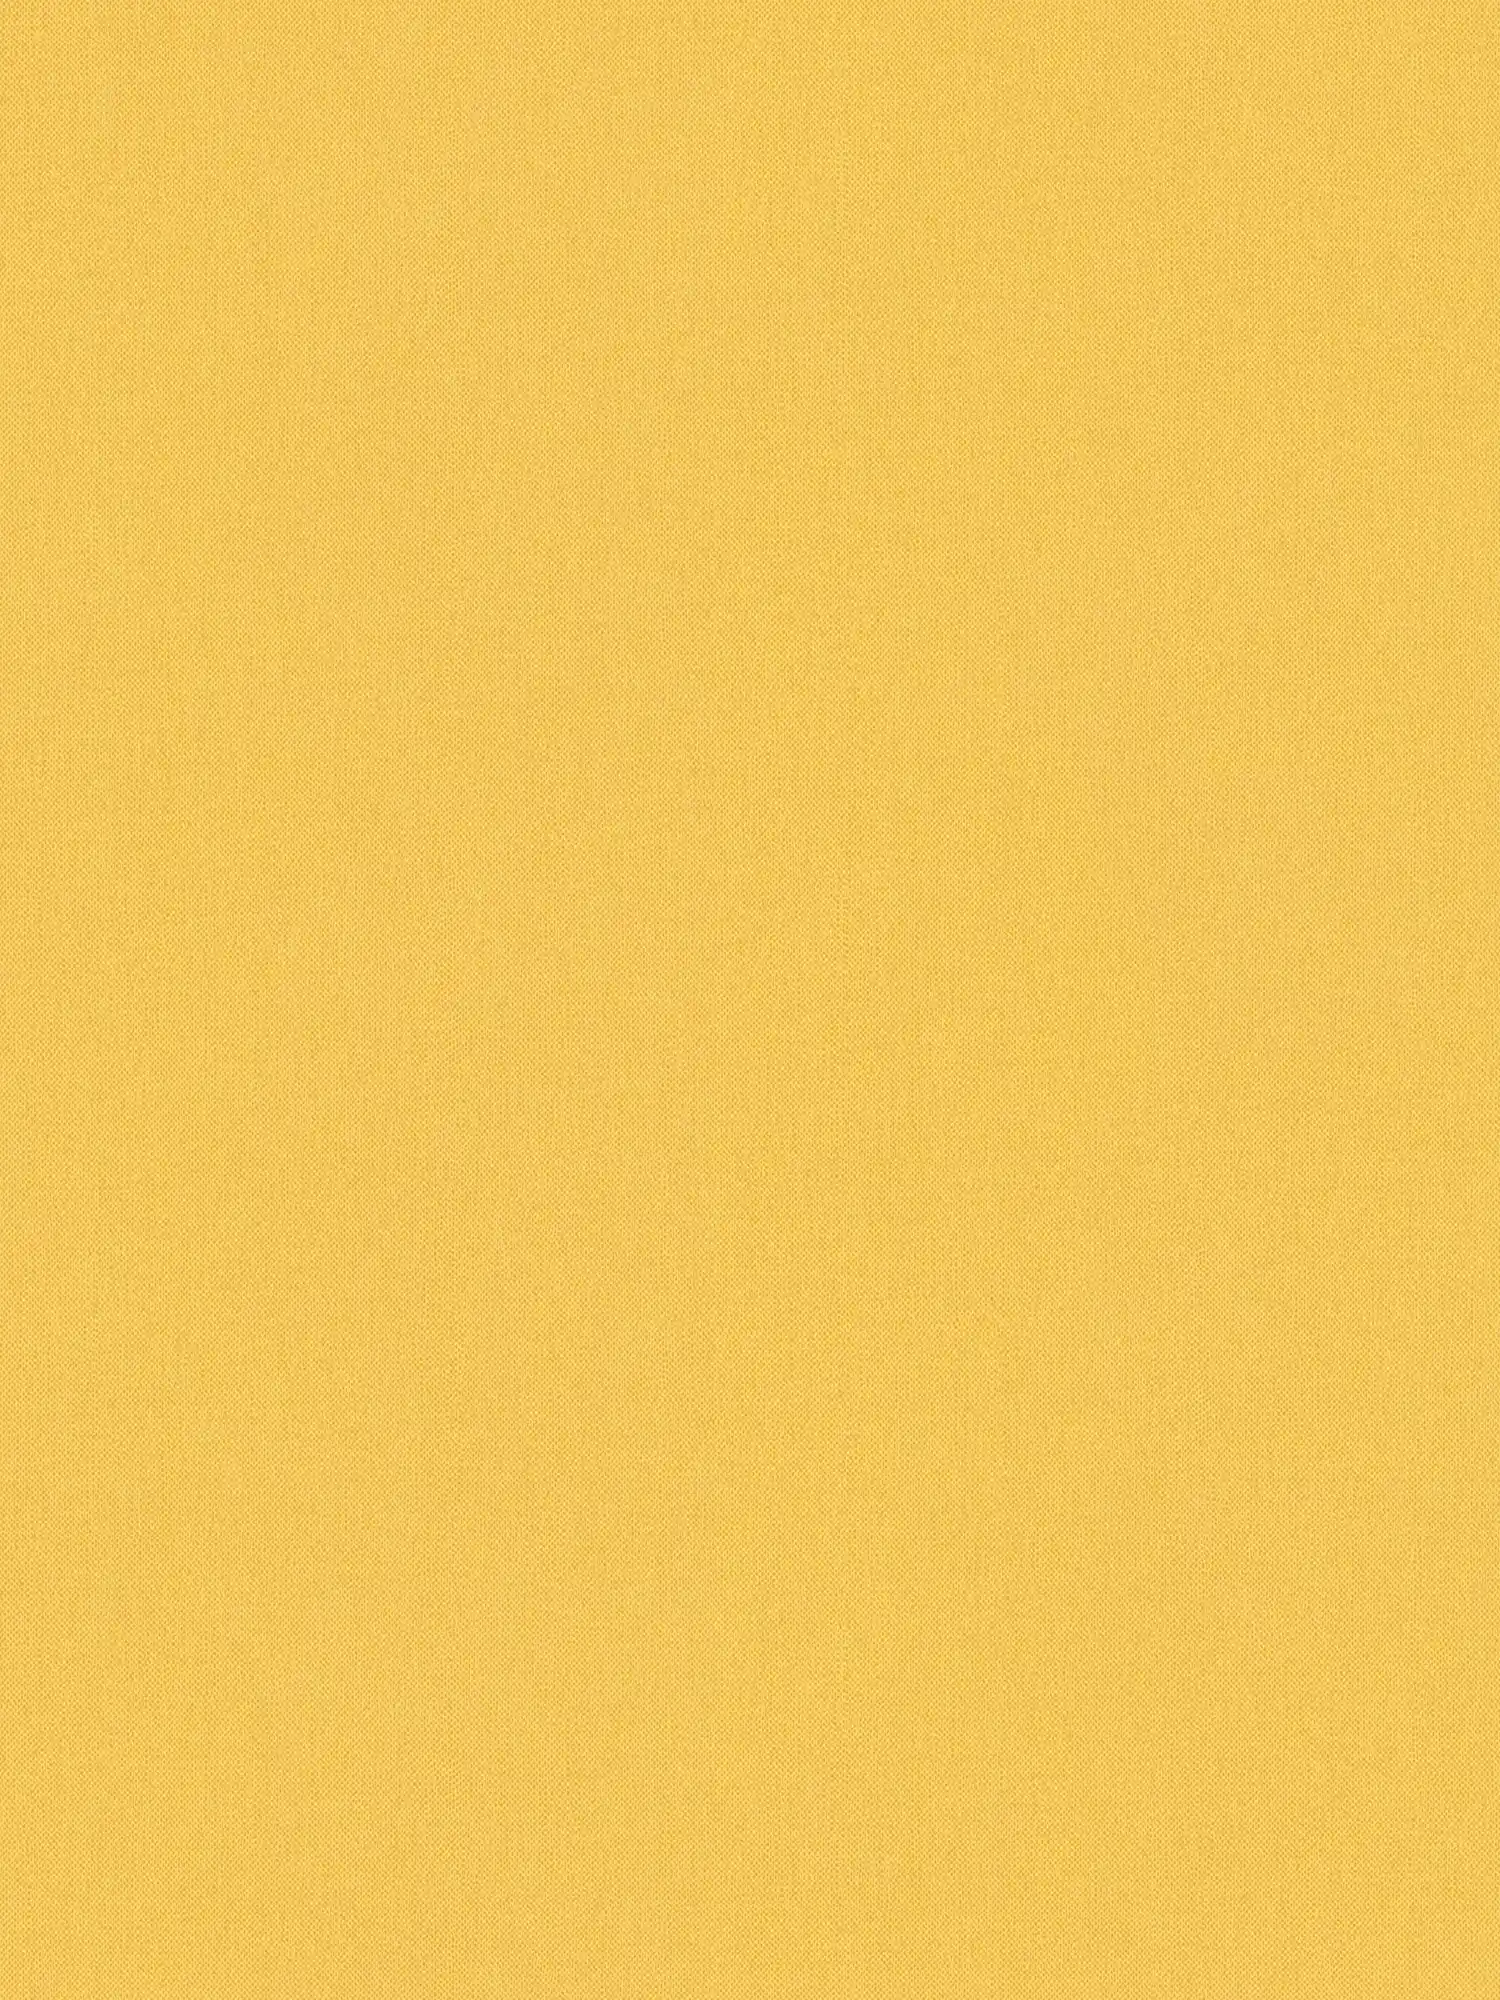 behang mosterdgeel uni met textielstructuur - geel
